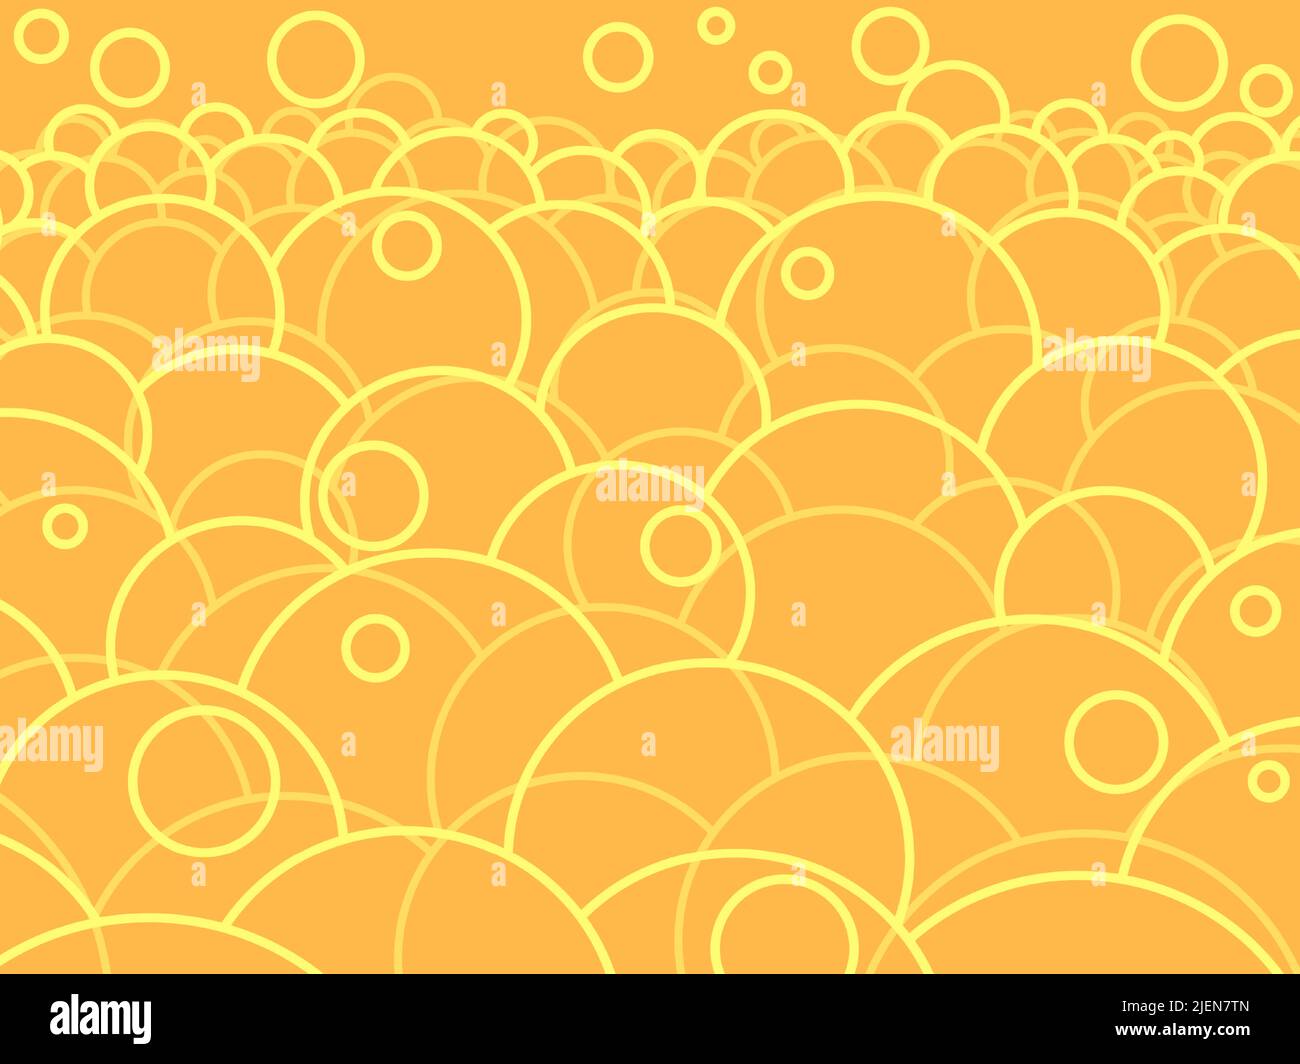 moléculas de fondo científico geométrico, física y química. bolas redondas. arte pop retro vector ilustración kitsch vintage 50s 60s estilo Ilustración del Vector